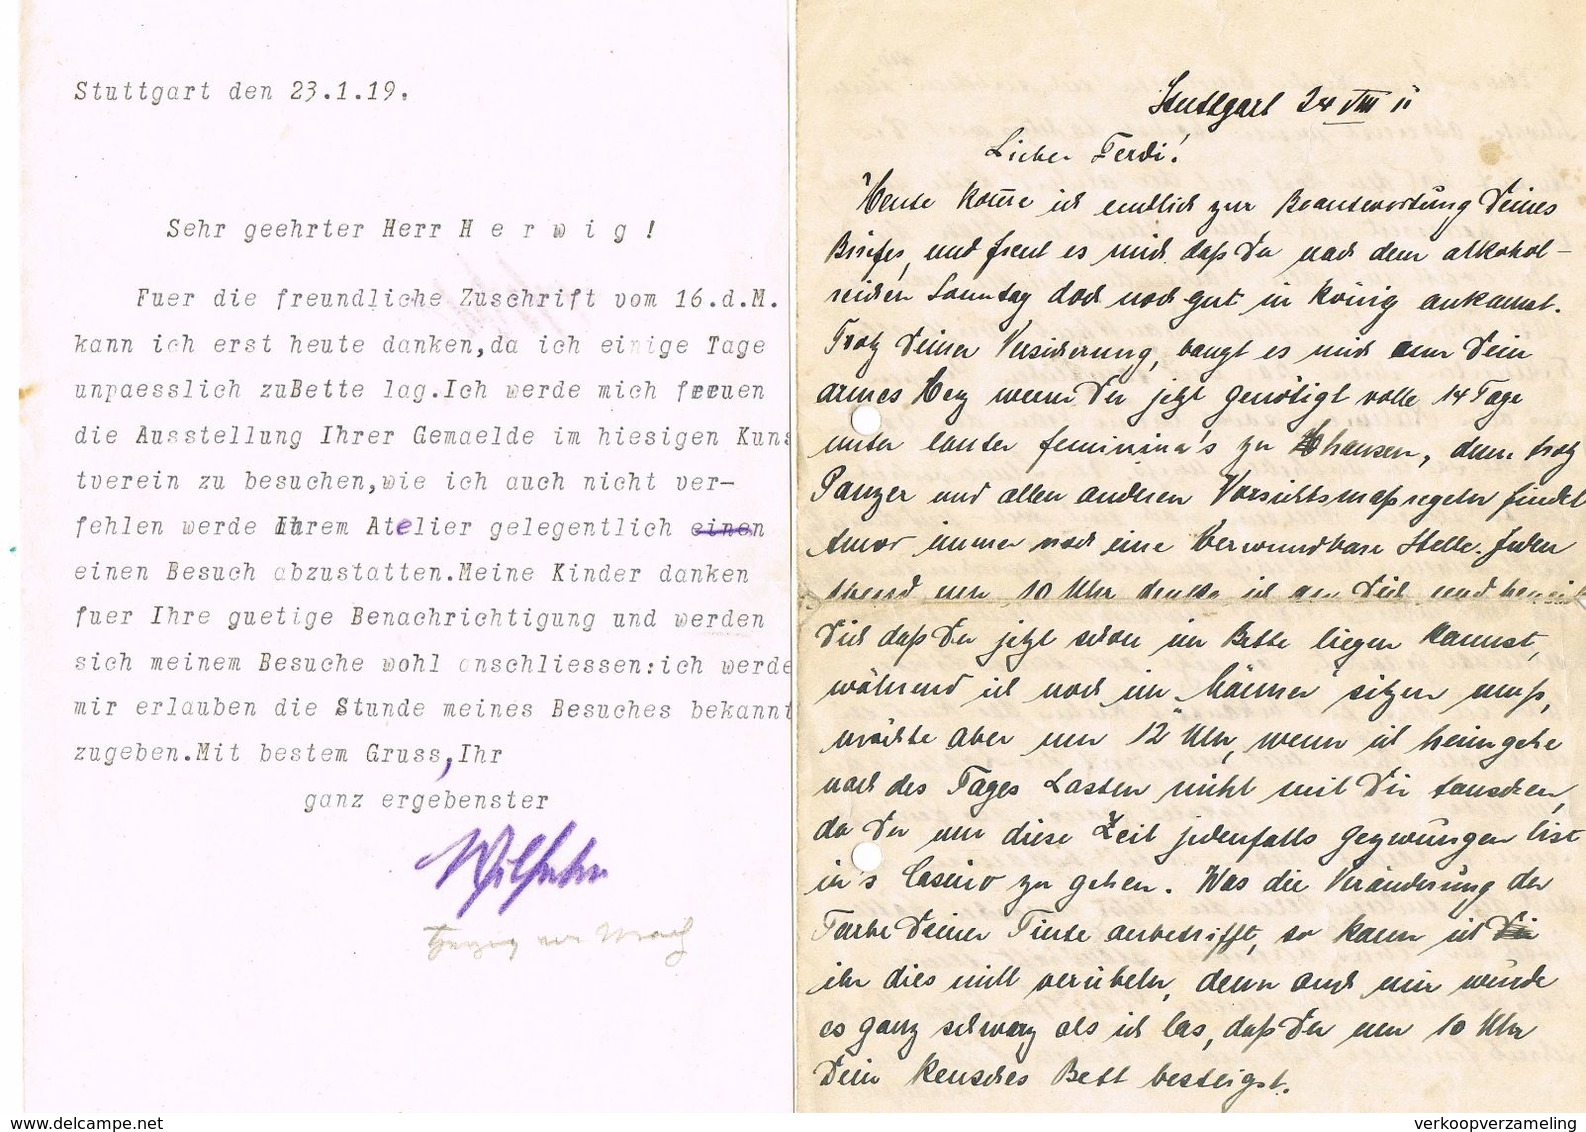 STUTTGART  brieven gericht tot Ferdinand Herwig